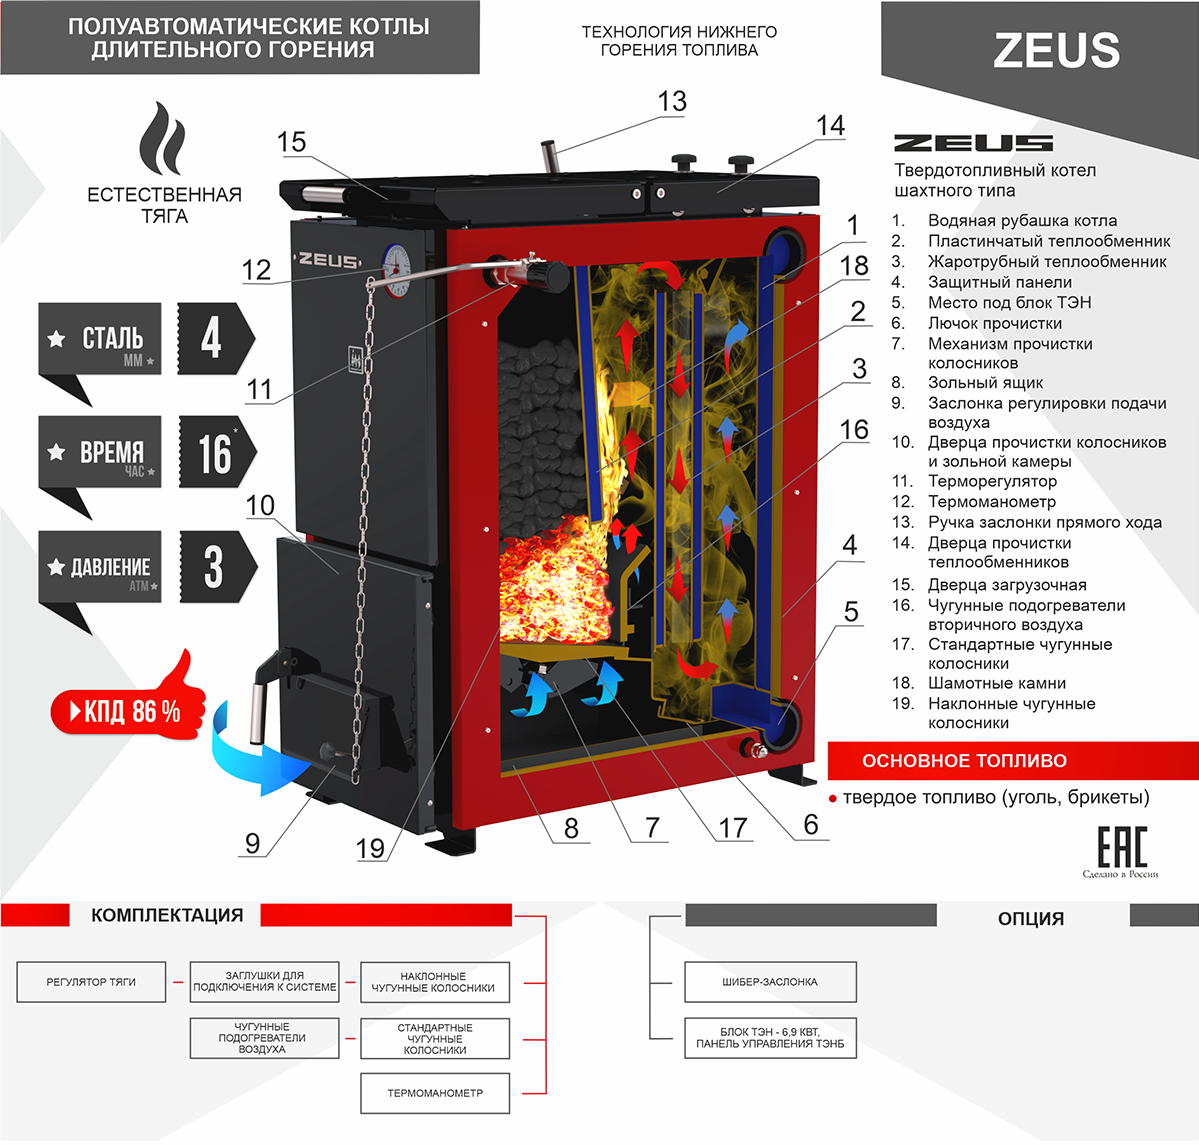 ZEUS (Зевс) -- 24 кВт – Омск. Угольный котел – водогрейный,  полуавтоматический, шахтного типа – серии ZEUS (Зевс), мощностью 24 кВт  производственной компании Термокрафт, для отопления помещения площадью  200-240 кв.м – продажа,